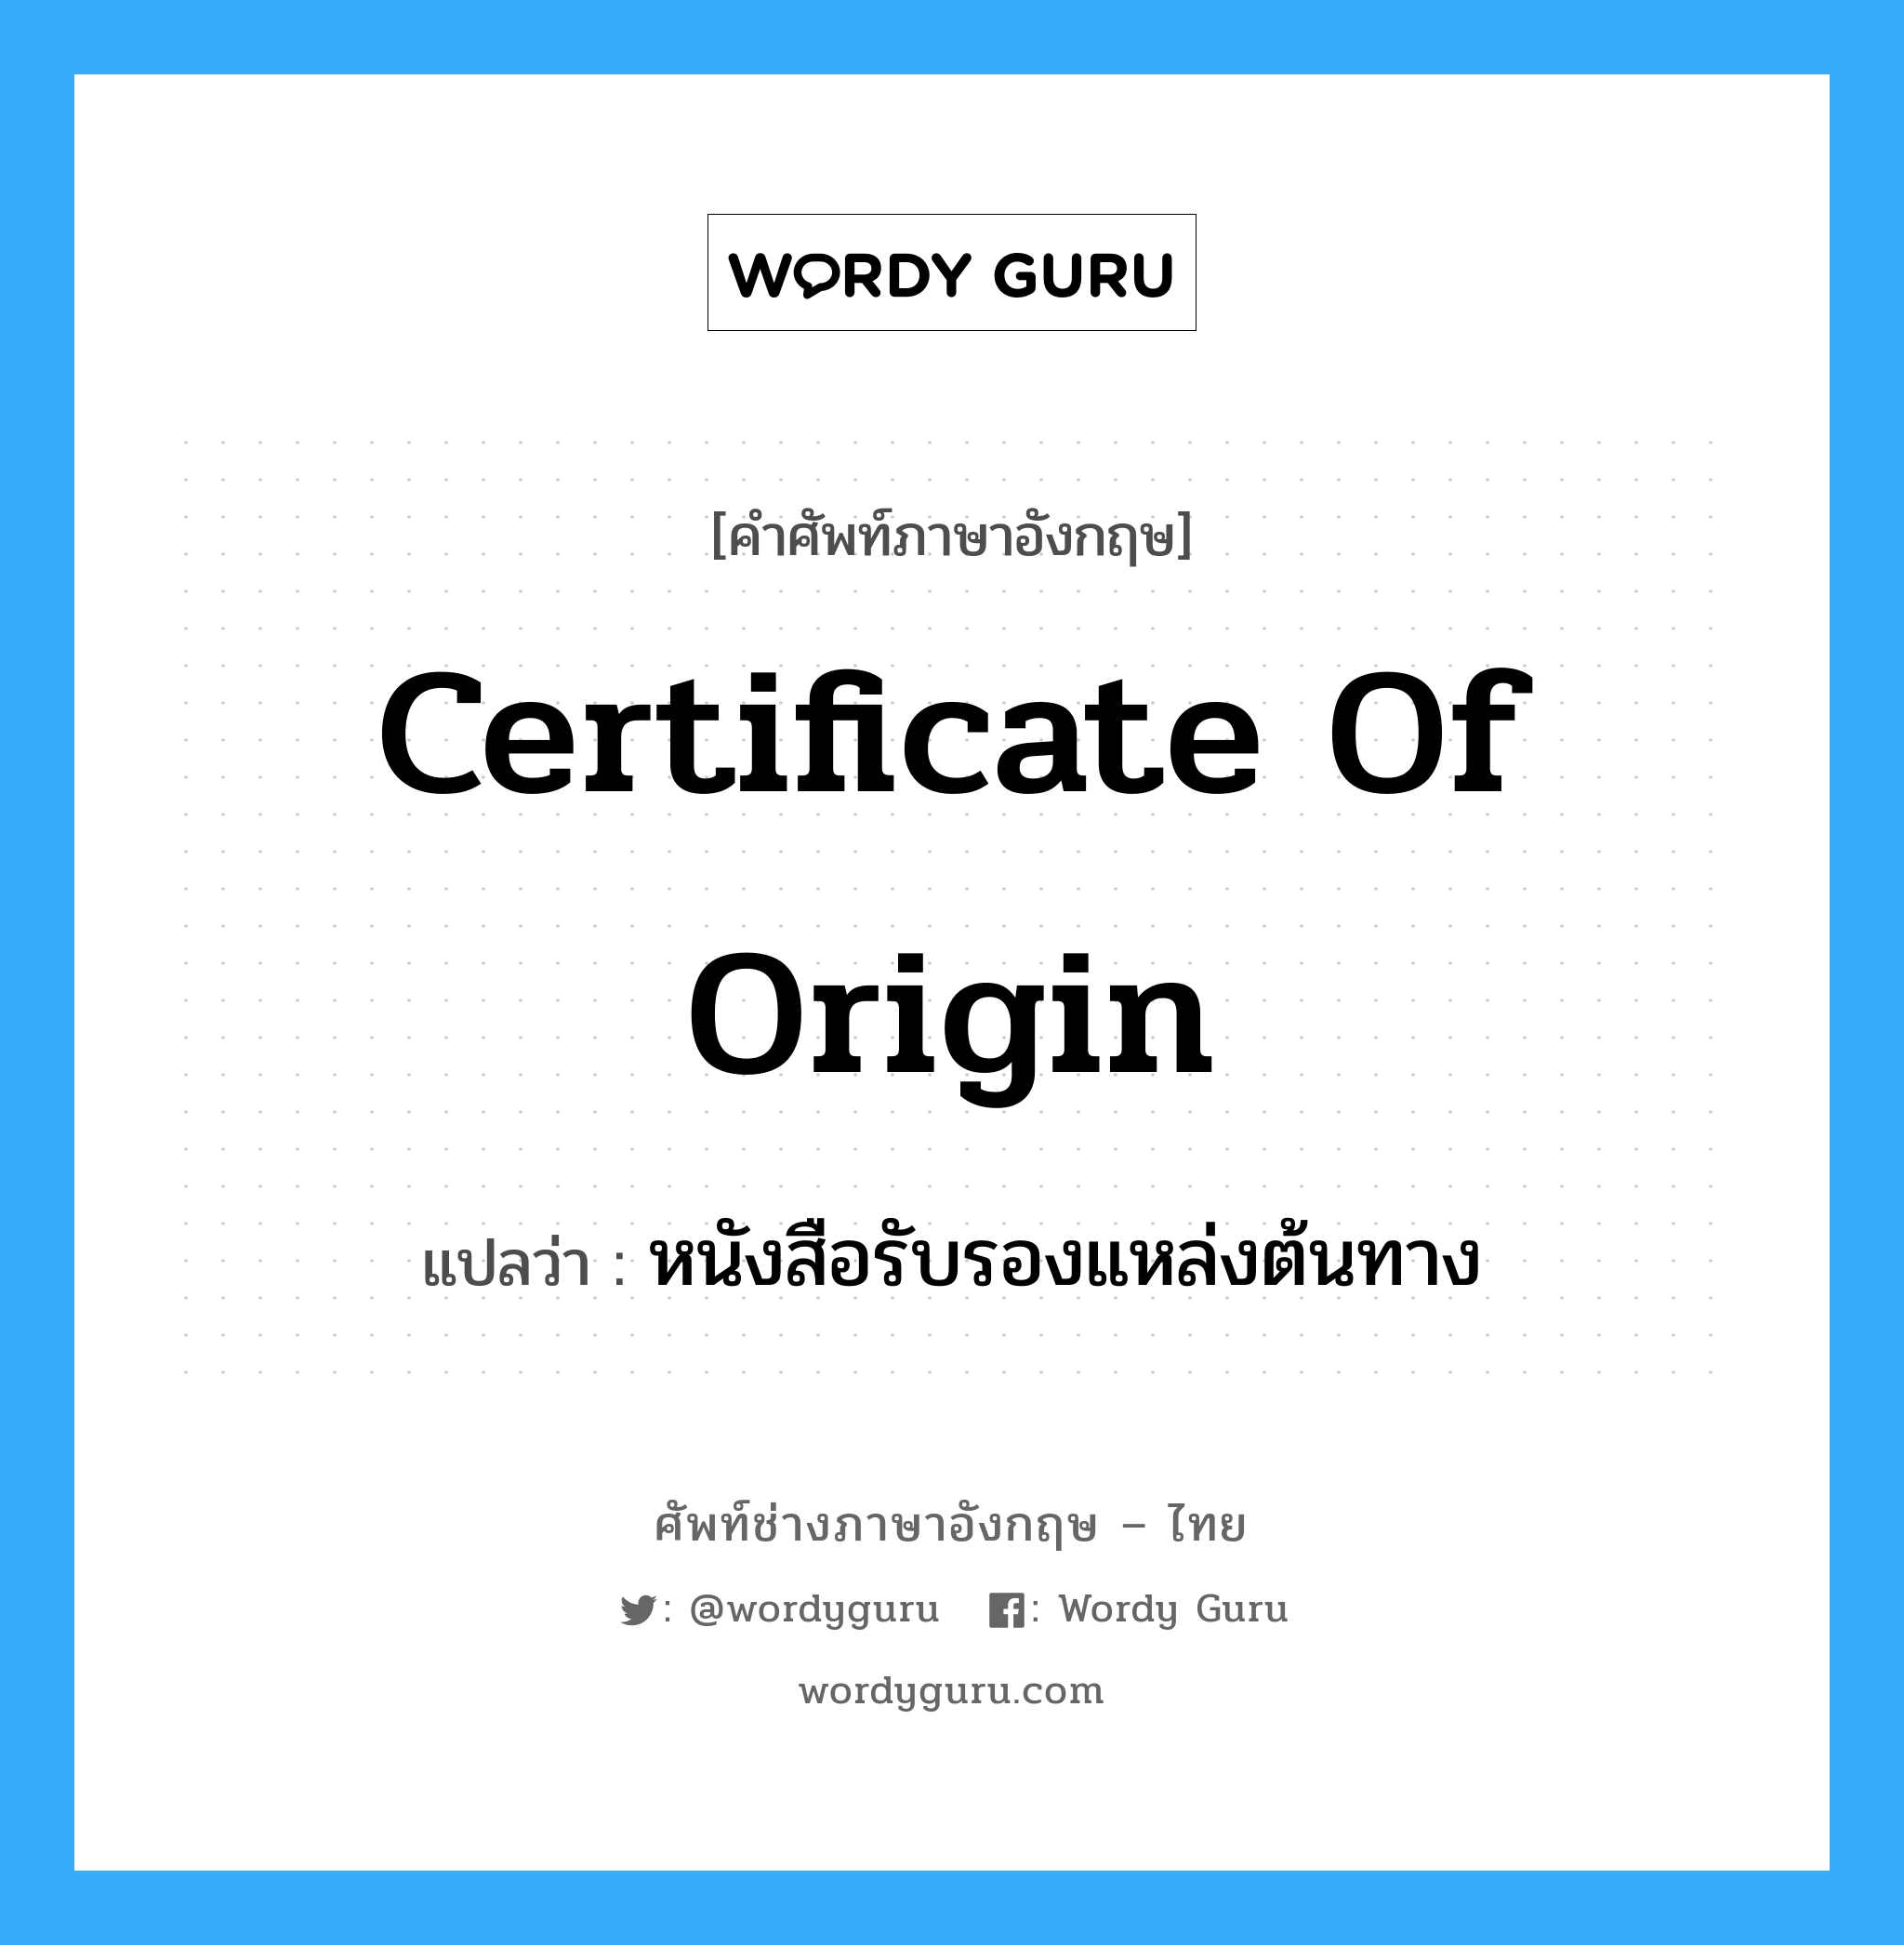 หนังสือรับรองแหล่งต้นทาง ภาษาอังกฤษ?, คำศัพท์ช่างภาษาอังกฤษ - ไทย หนังสือรับรองแหล่งต้นทาง คำศัพท์ภาษาอังกฤษ หนังสือรับรองแหล่งต้นทาง แปลว่า Certificate of Origin